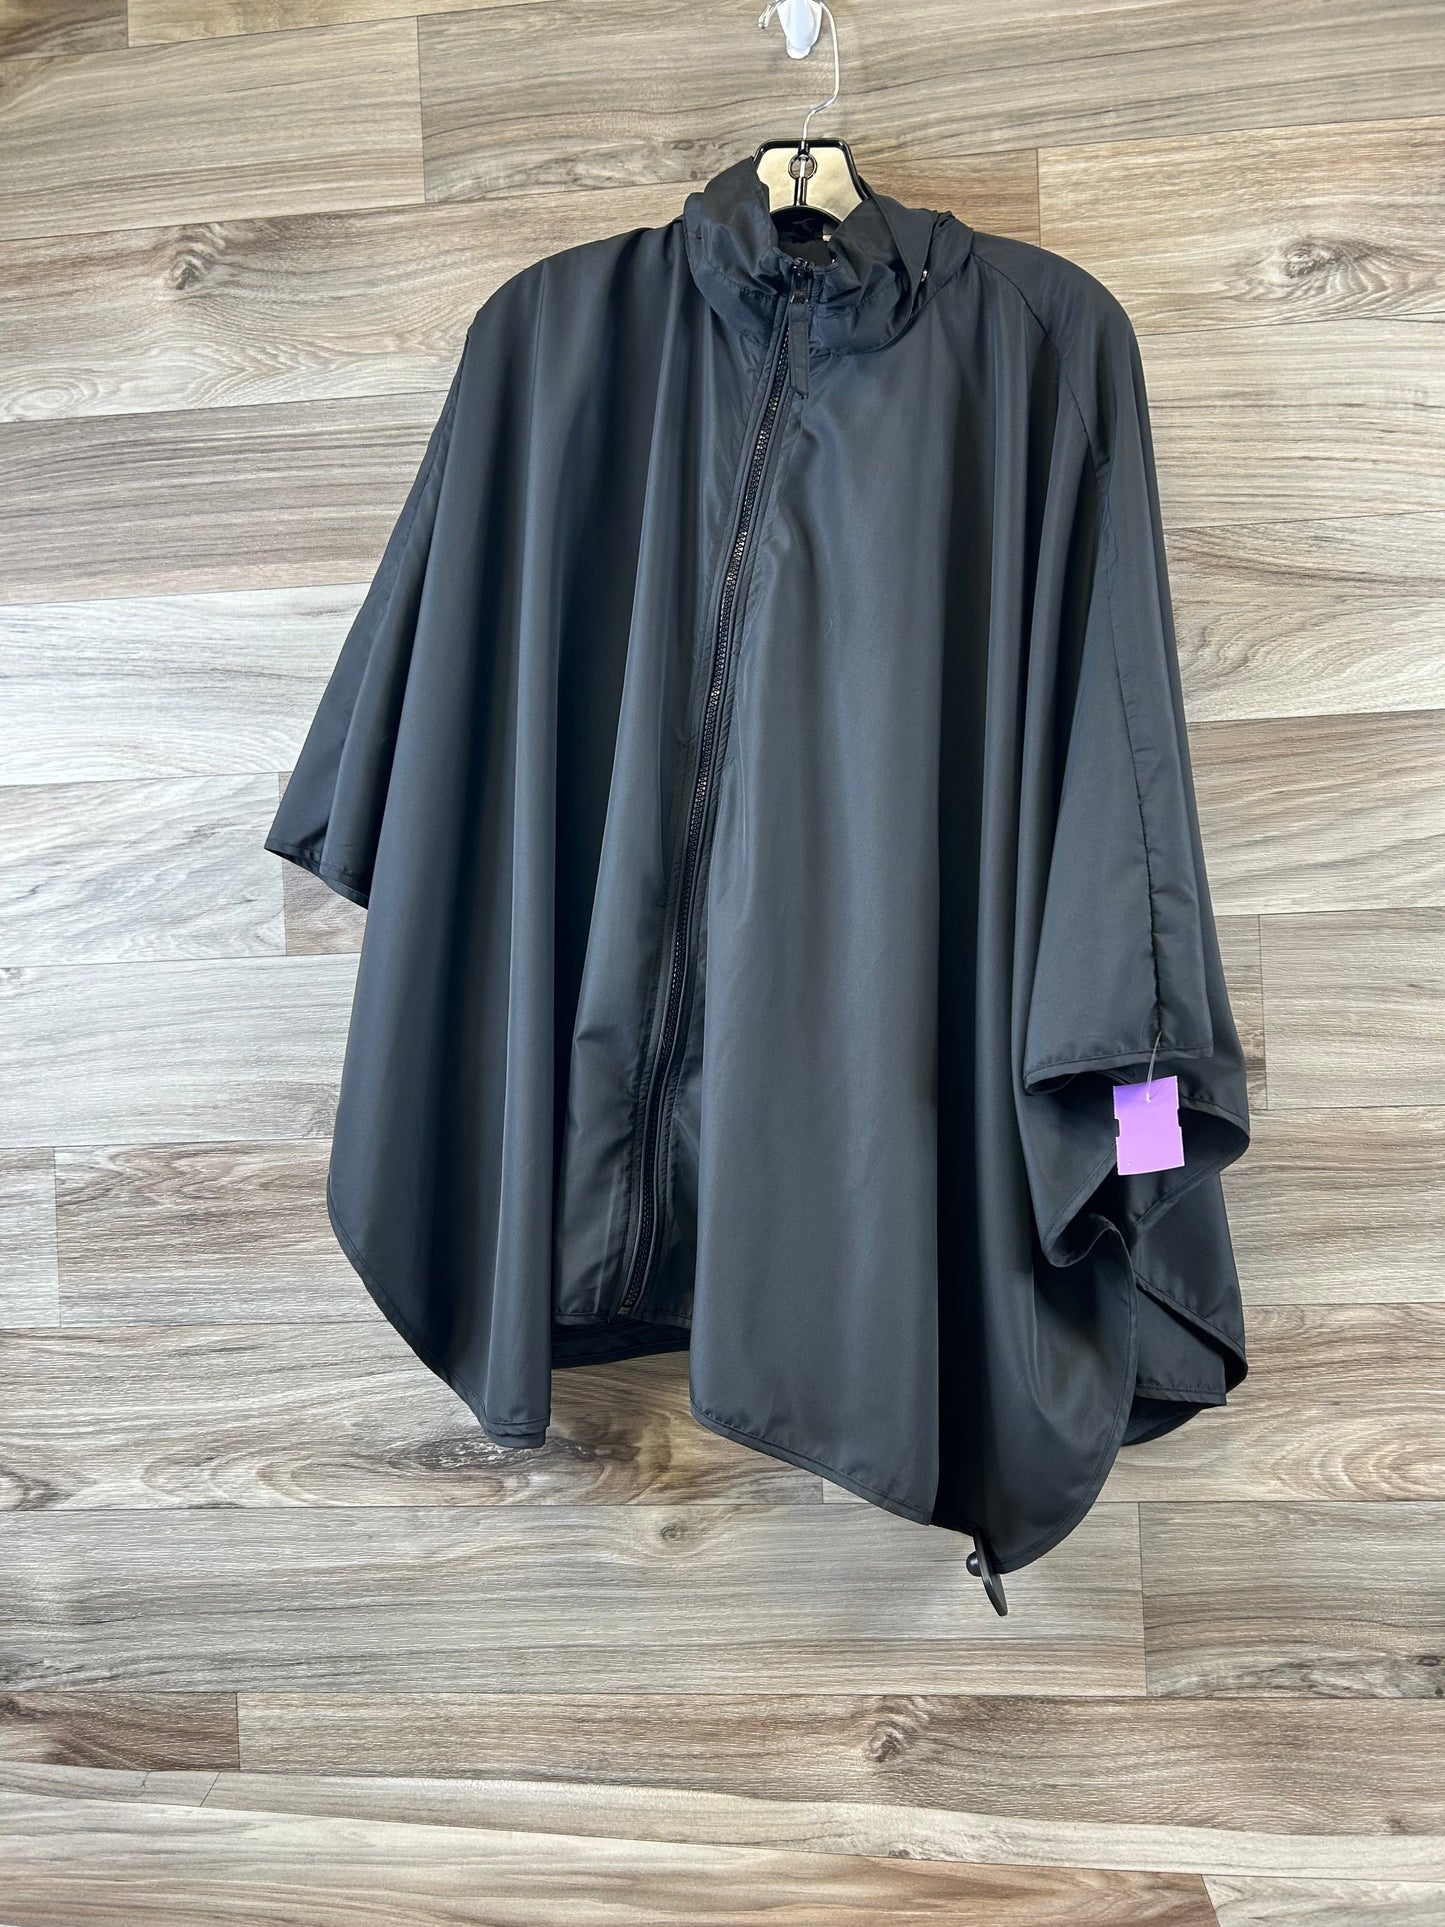 Black Coat Raincoat Clothes Mentor, Size Onesize